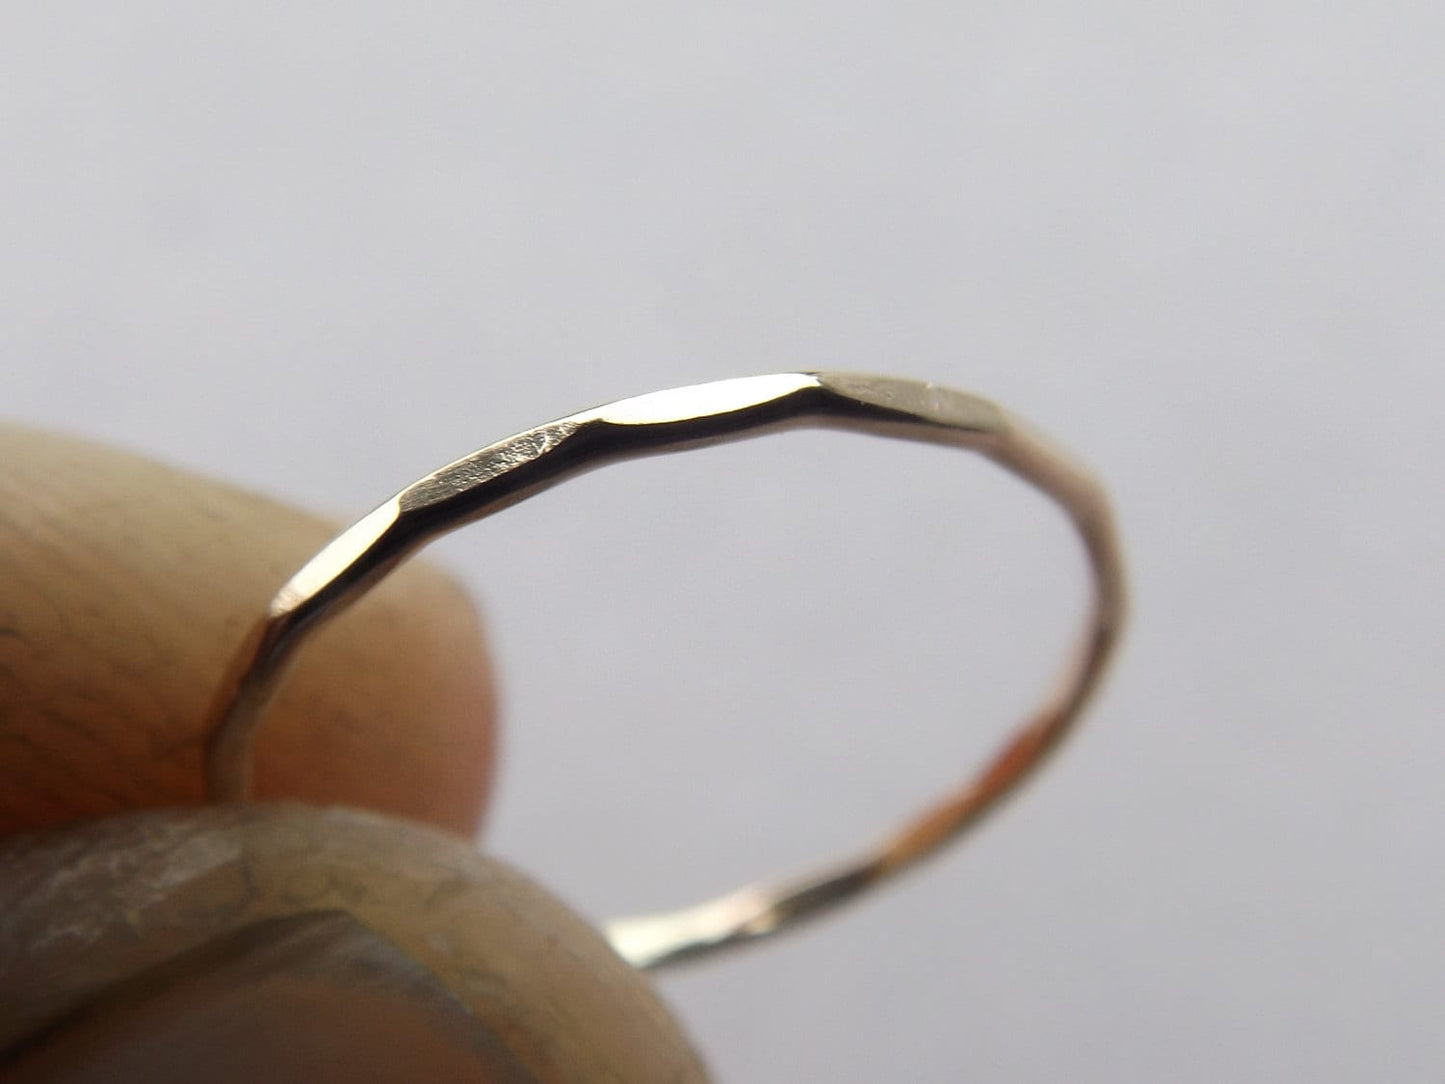 Skinny Gold Wave Knuckle Ring Set, Wave Ring, above knuckle, Knuckle Rings, Toe Rings, Rings, Yellow Goldfilled Knuckle Ring, Wave, Hammered